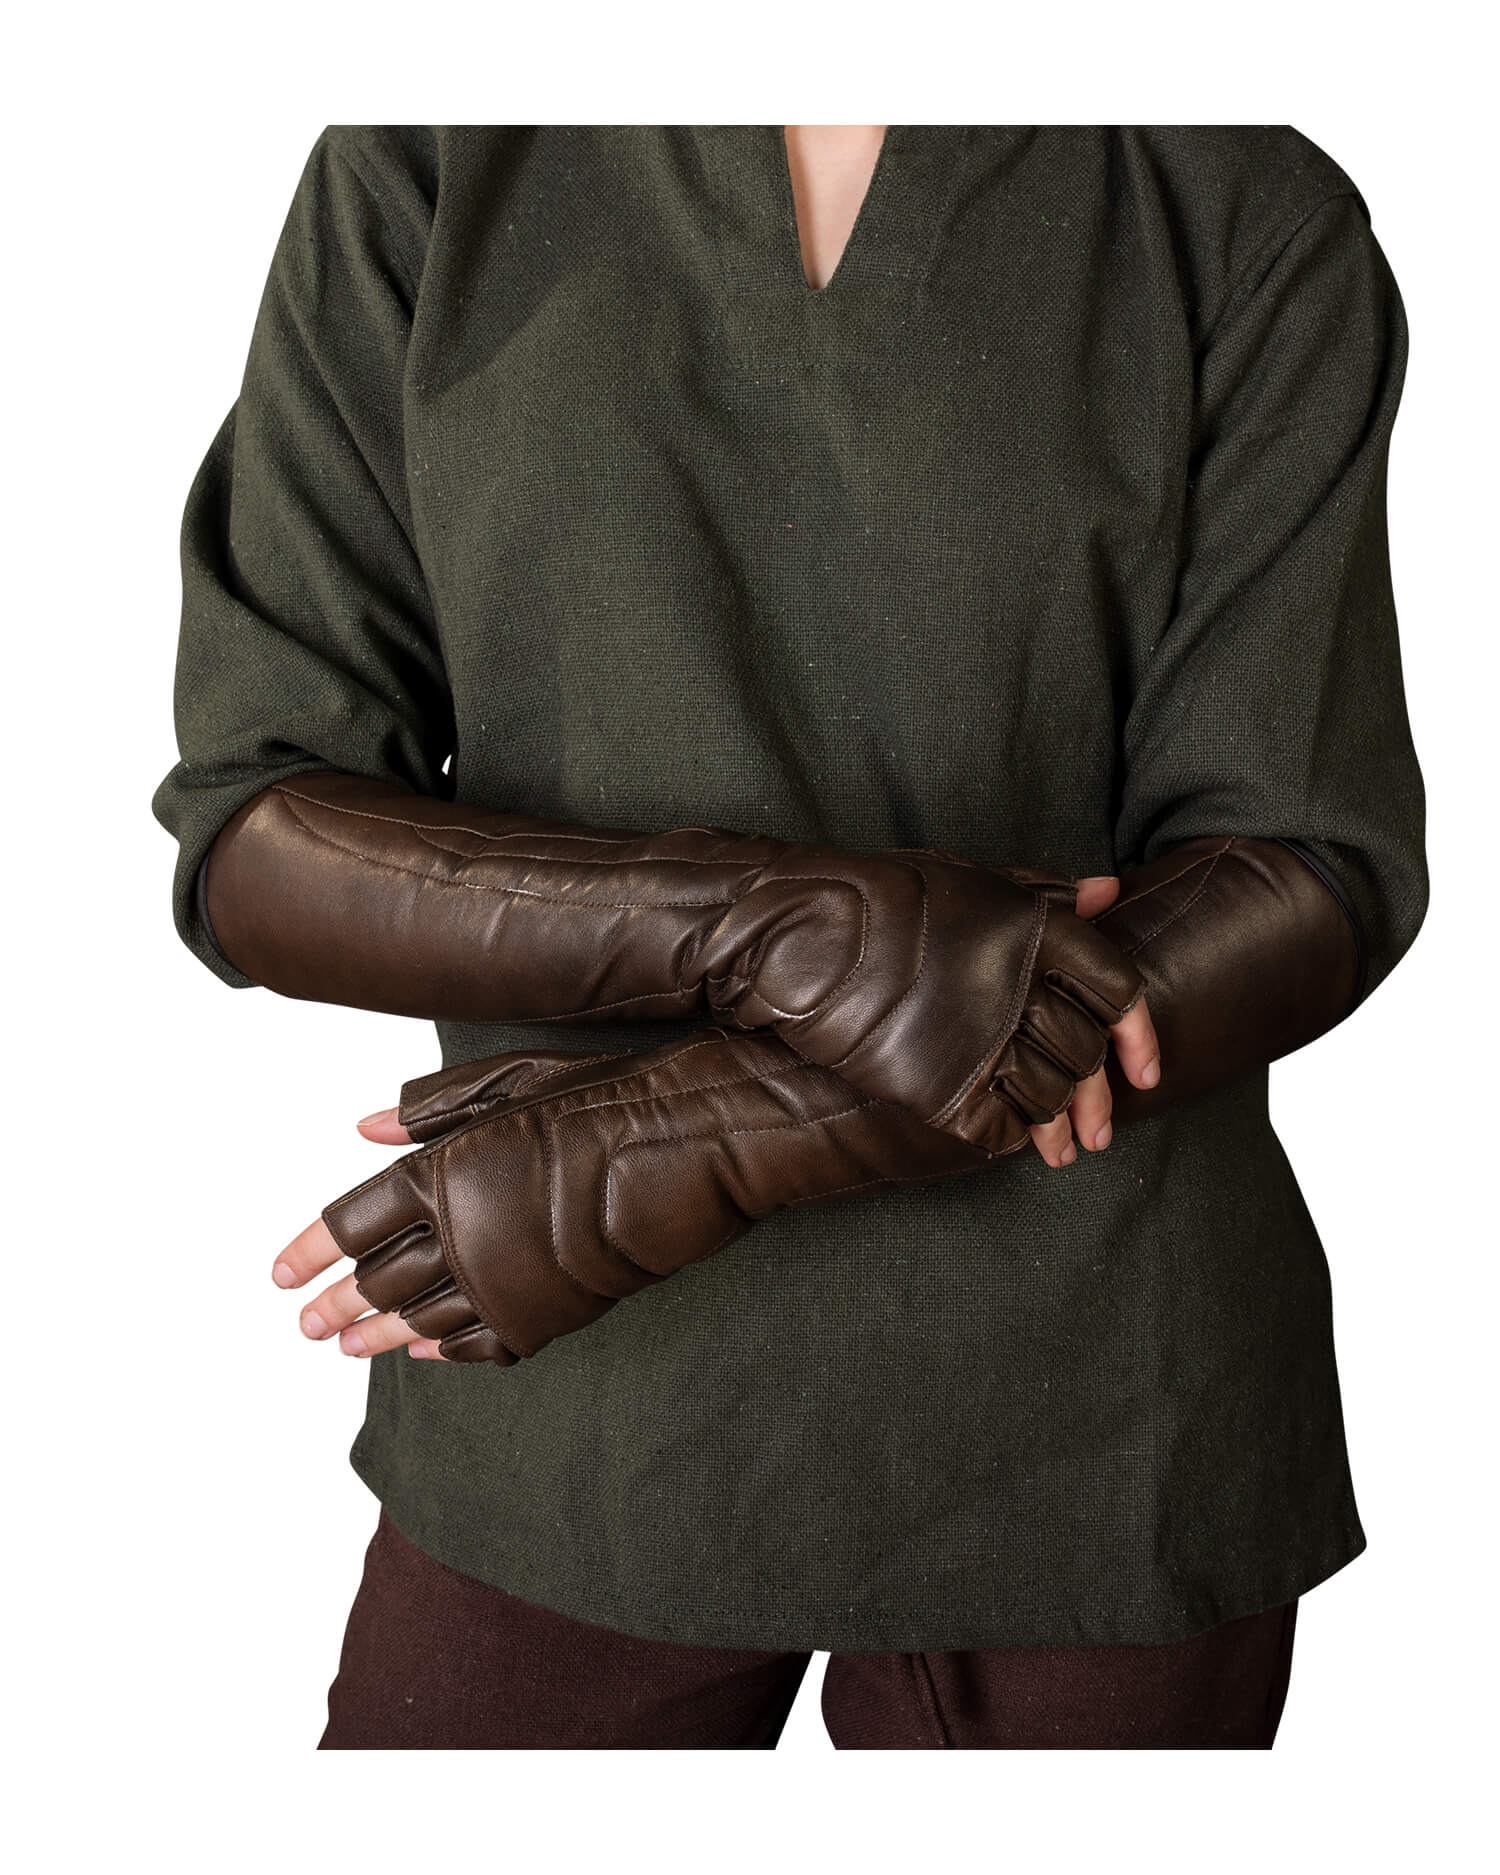 Gillian gloves